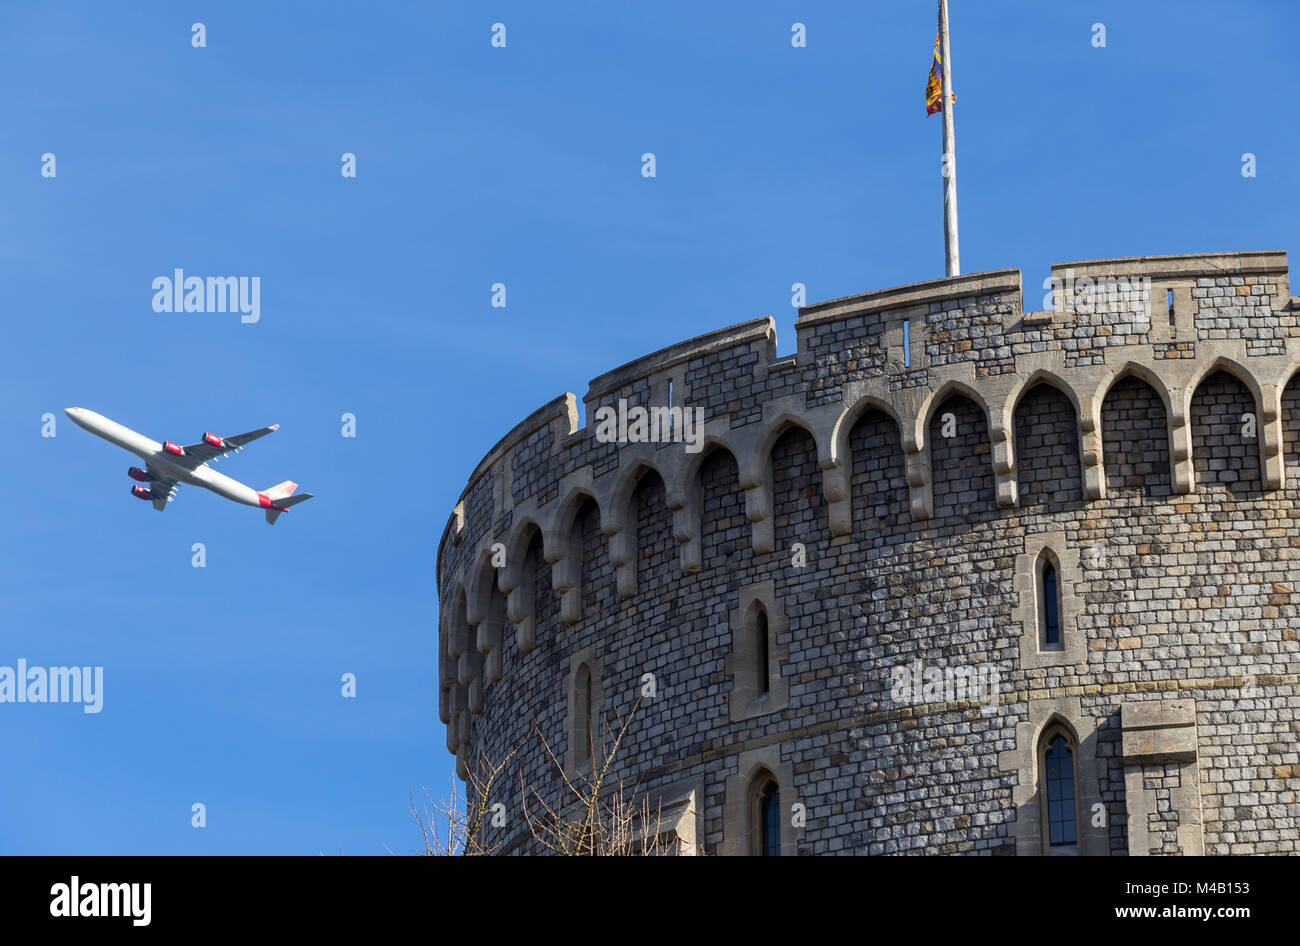 Avion / avion / avion / vol de l'aéroport d'Heathrow sur la tour ronde du château de Windsor, escalade après le décollage, & drapeau Royal Standard Banque D'Images